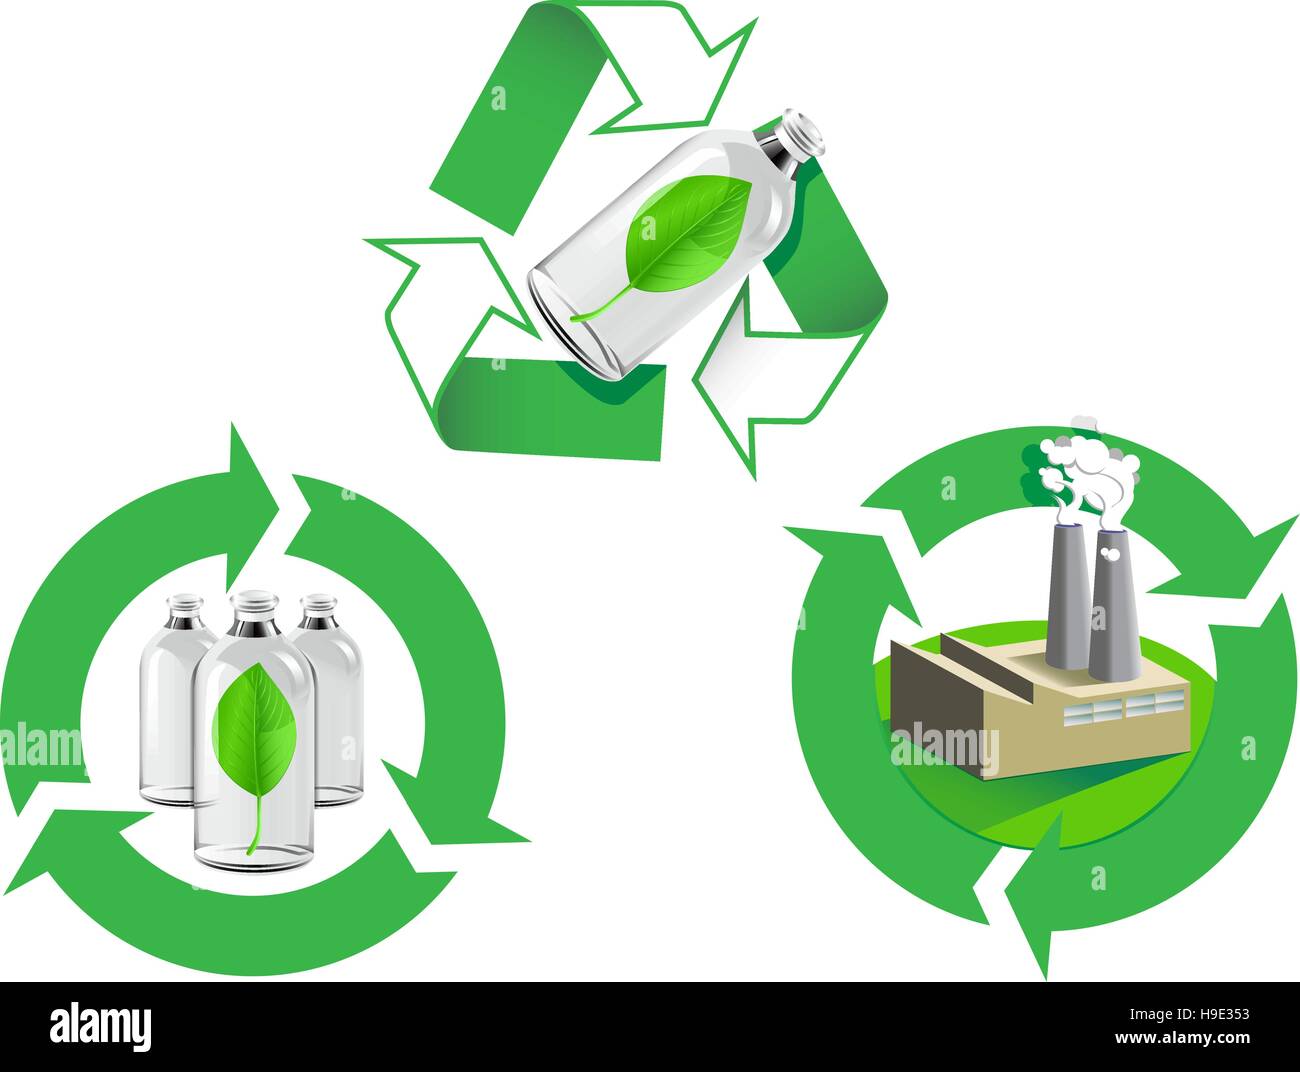 Trois icônes liées à l'énergie renouvelable ou la sauvegarde de l'environnement à travers le recyclage Illustration de Vecteur